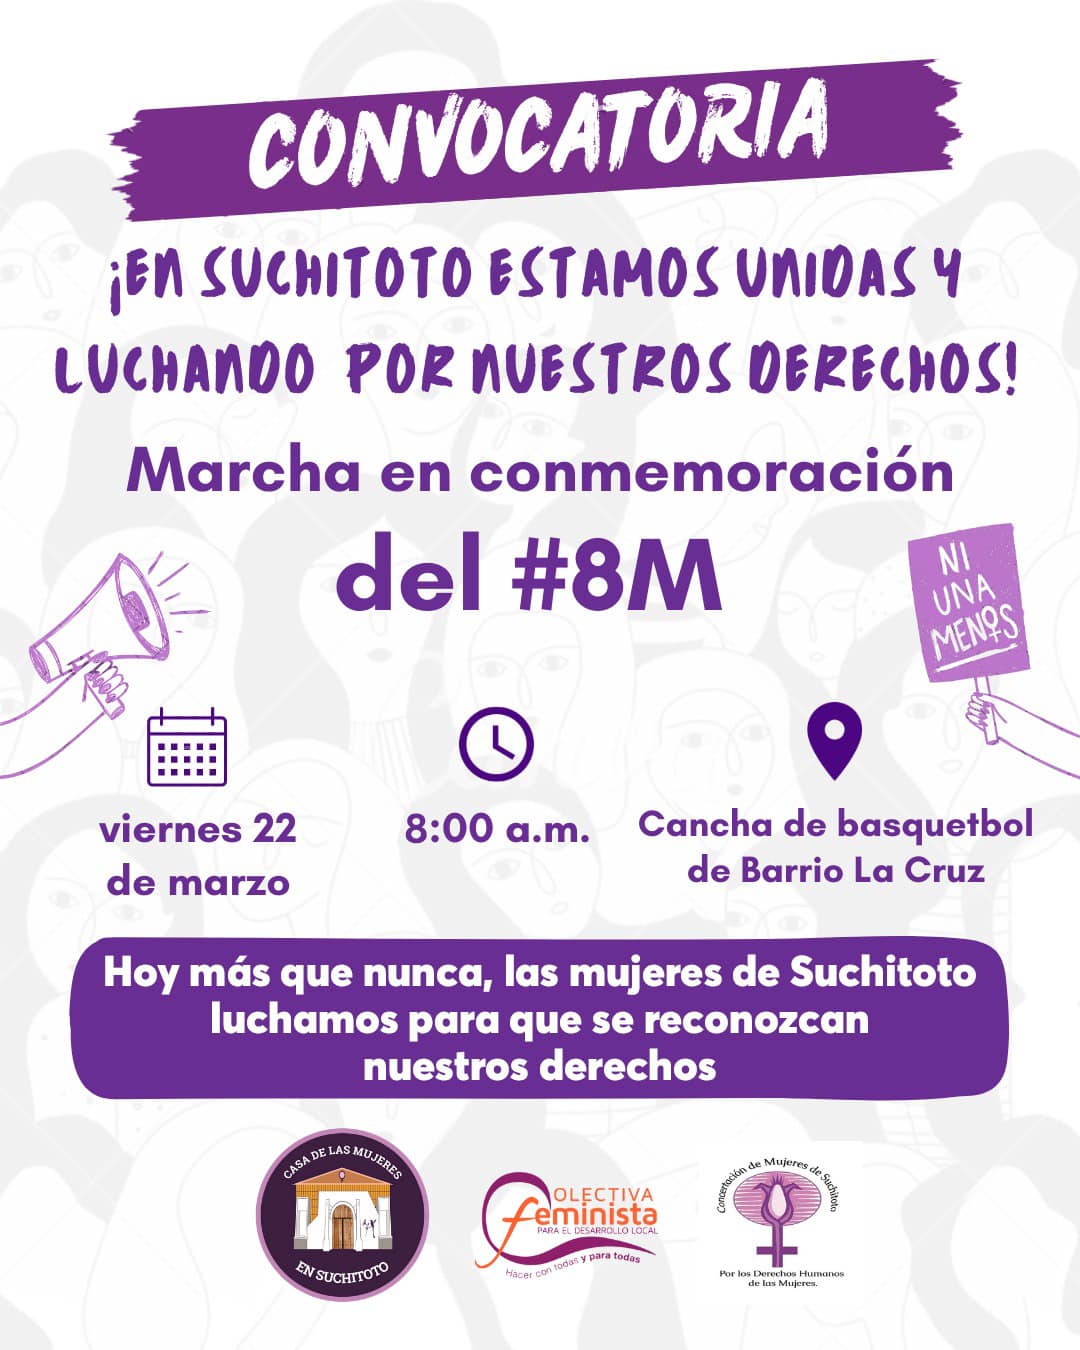 Marcha 22 de marzo en Suchitoto conmemoración del #8M